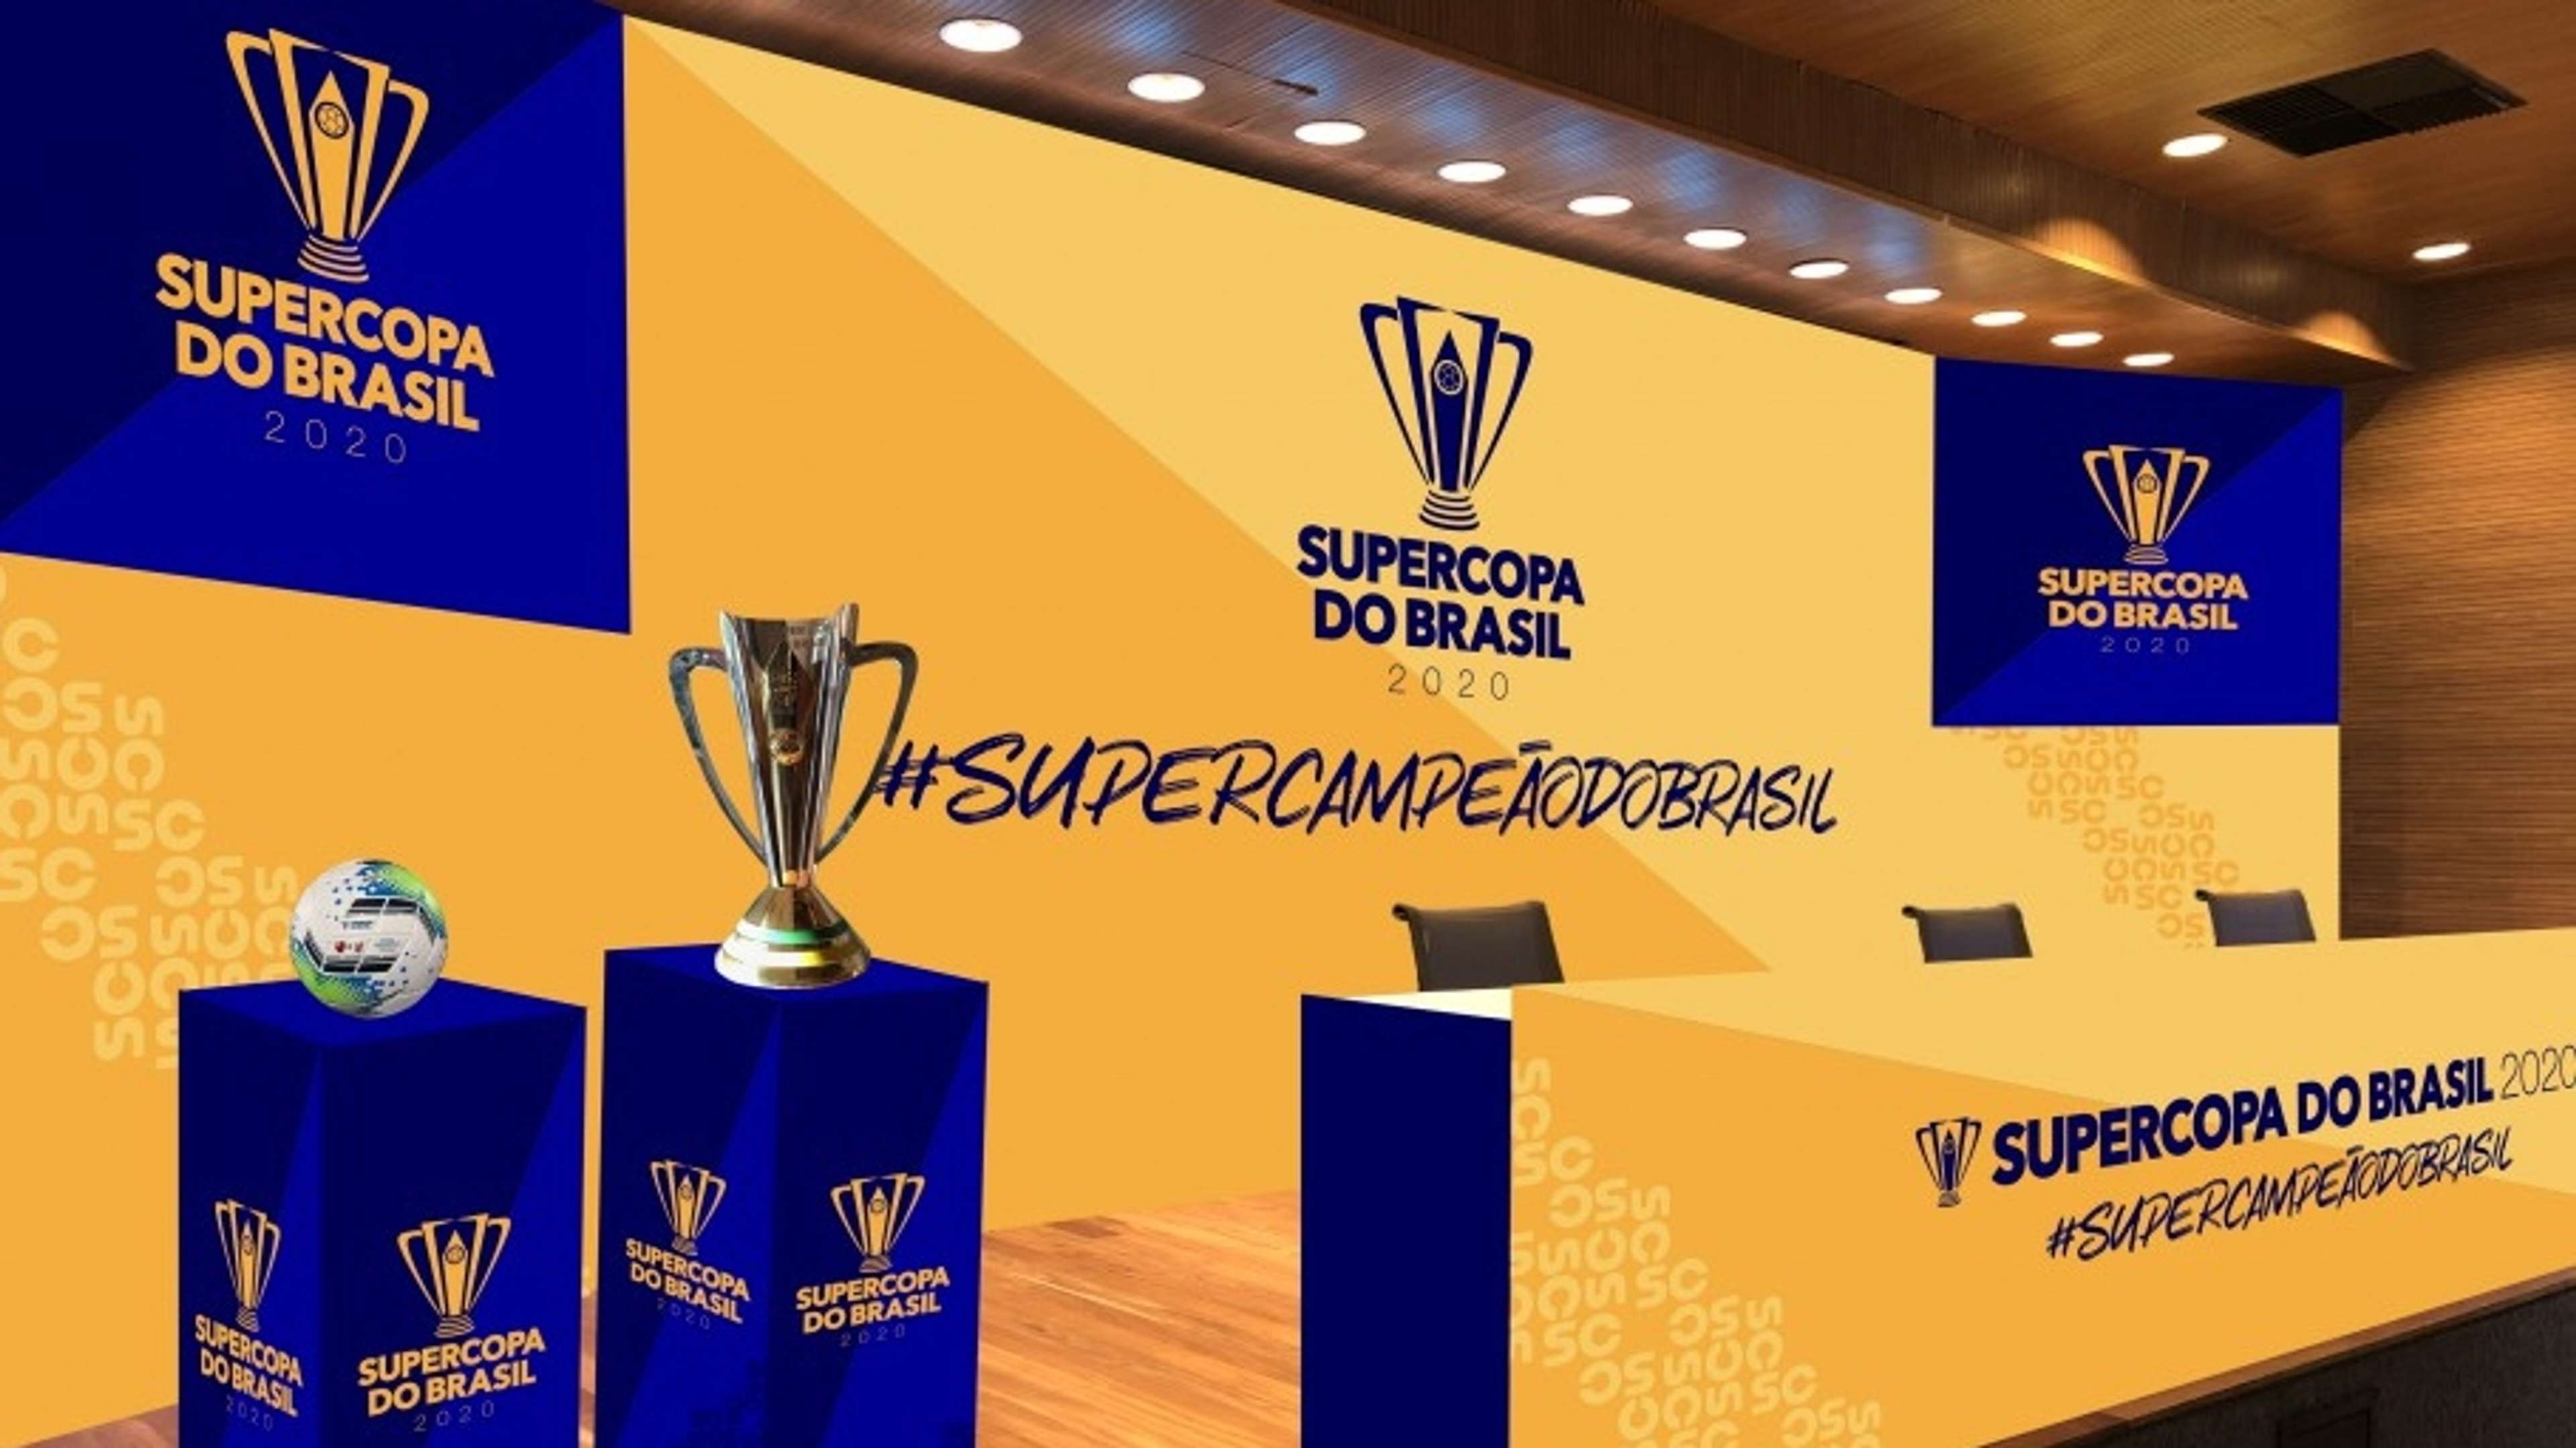 Supercopa da Brasil 2020